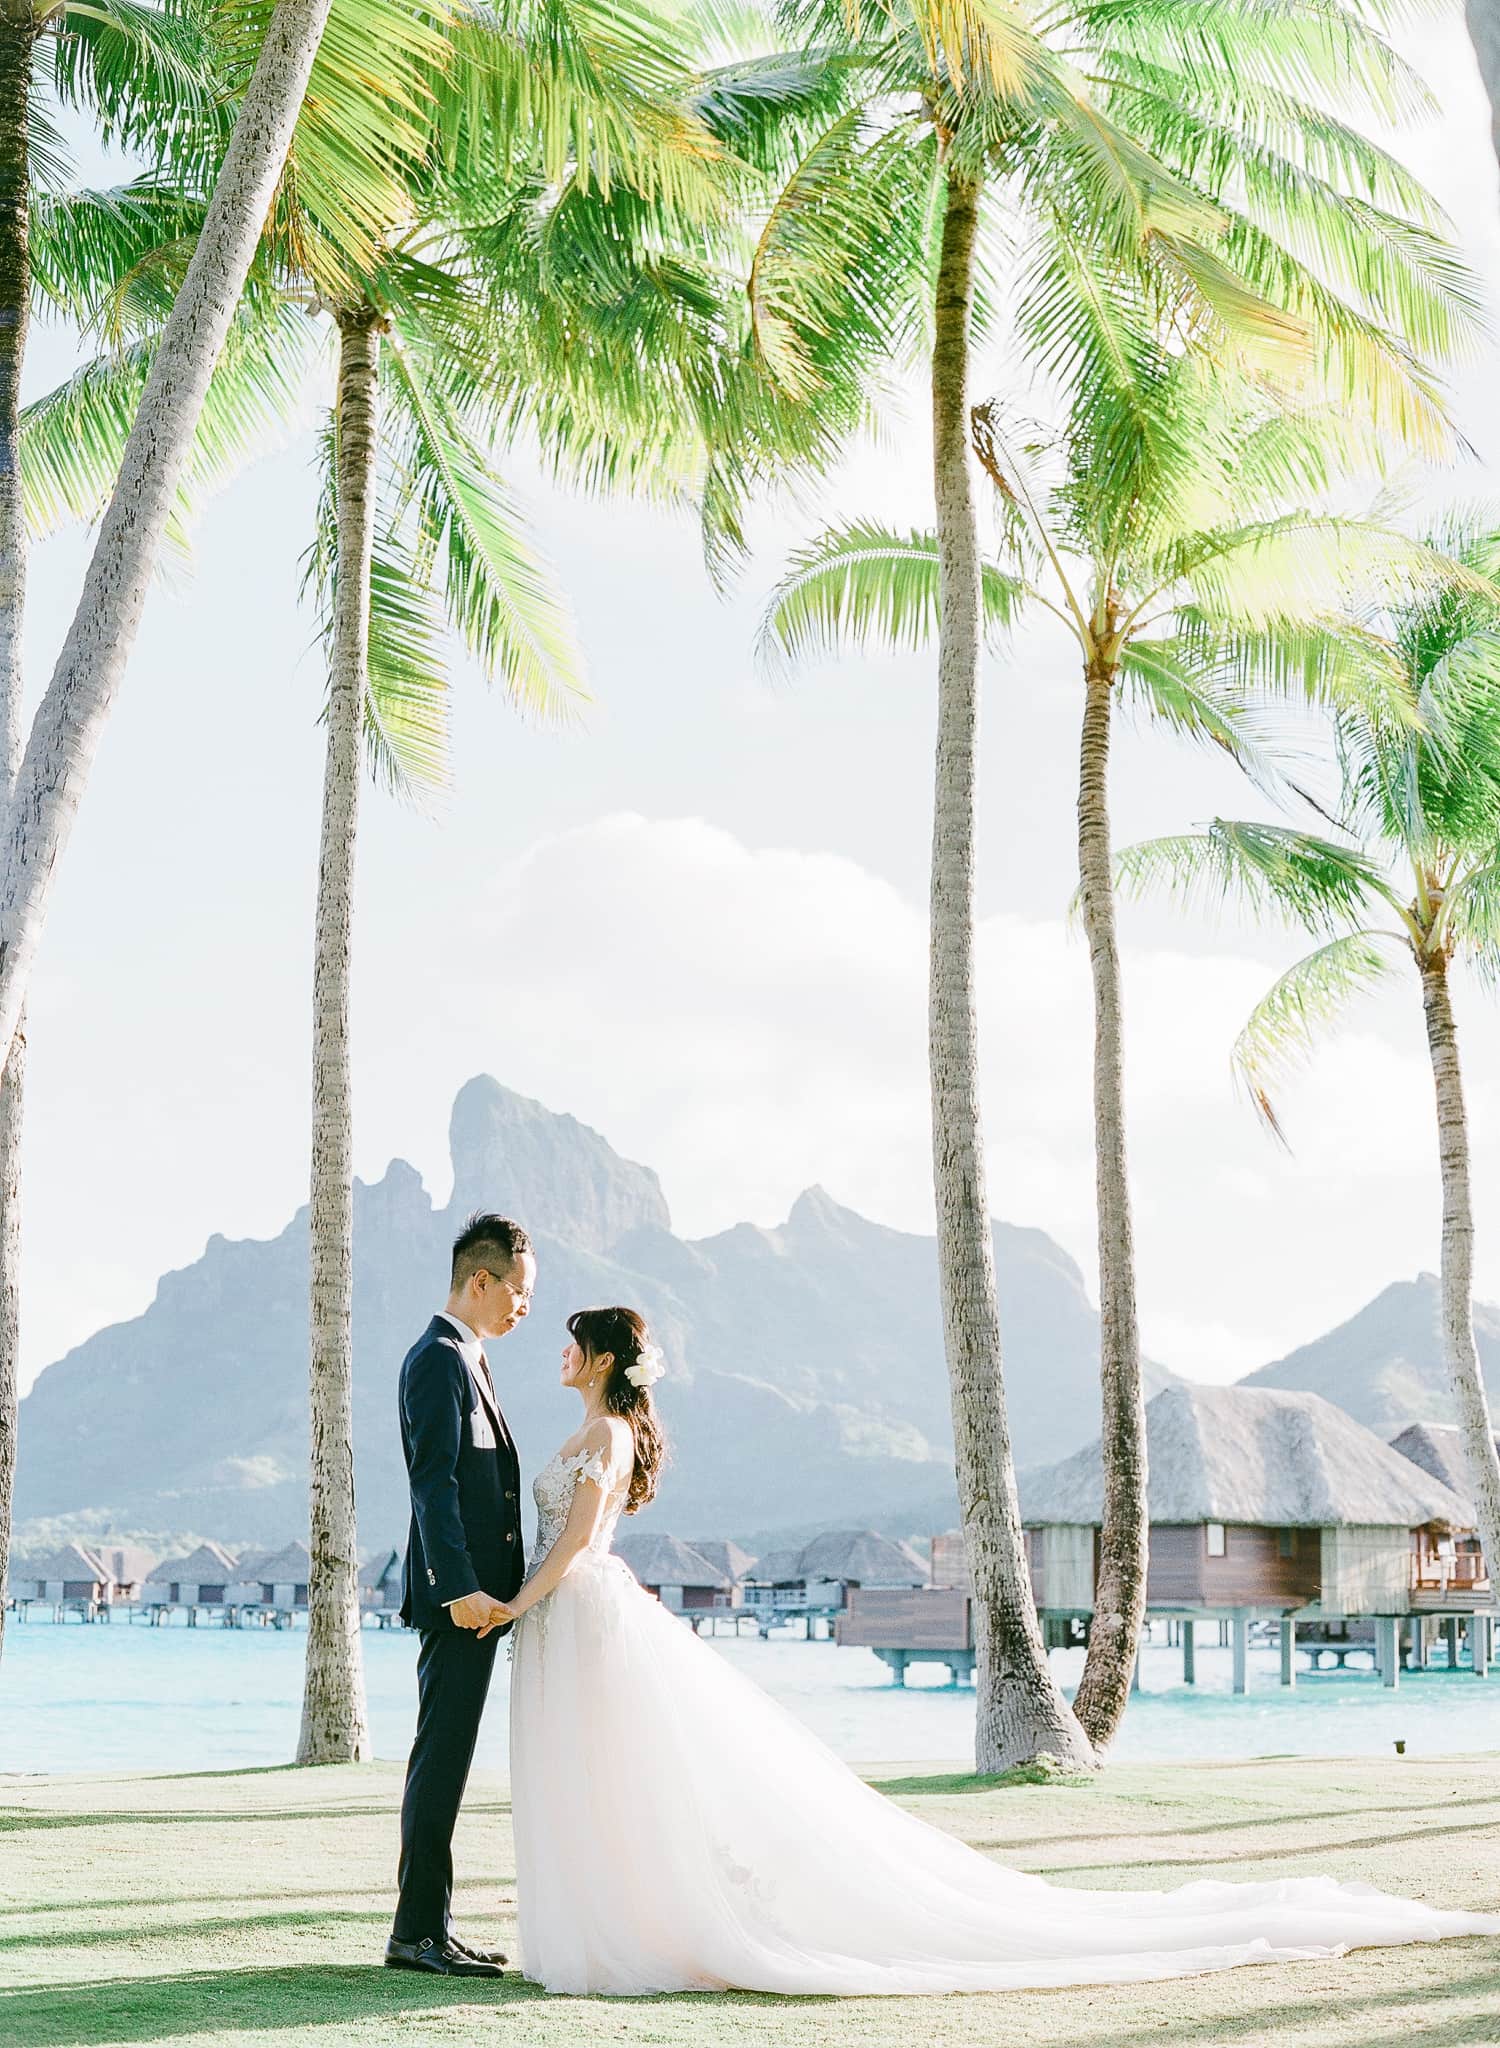 Elegant Wedding at the Four Seasons in Bora Bora, Galia Lahav wedding dress